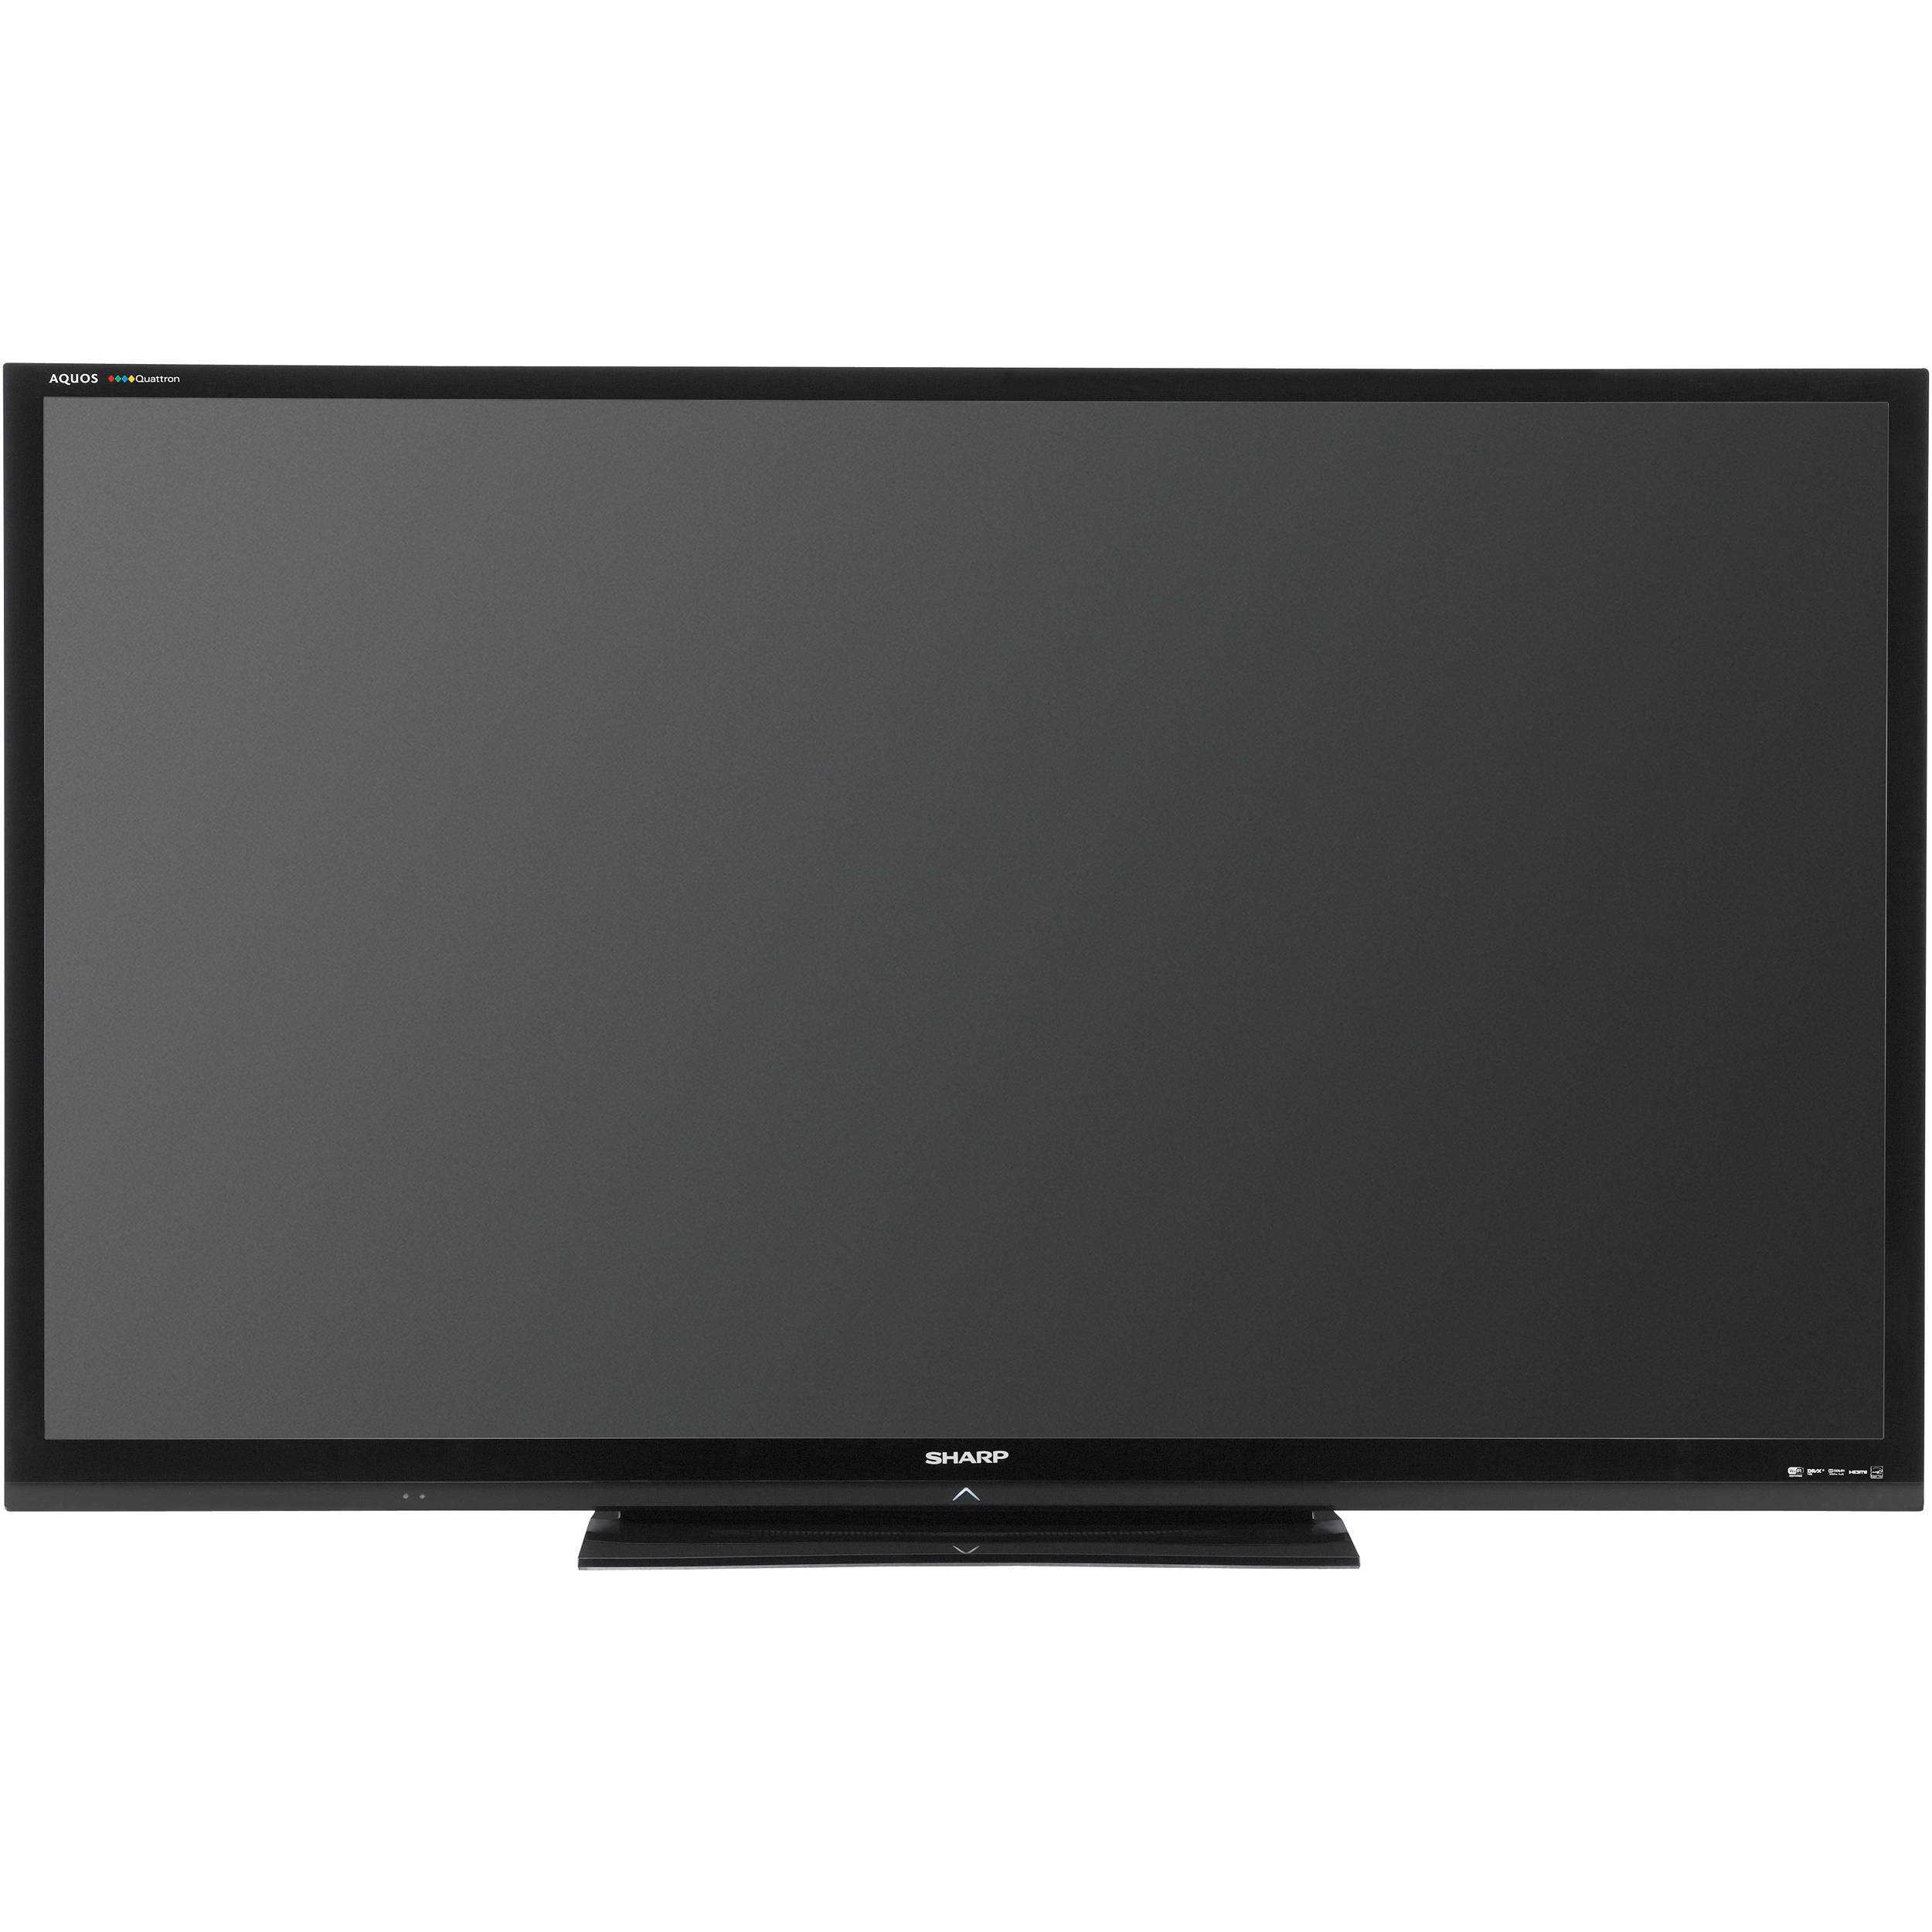 Sharp lc-80le857 - купить , скидки, цена, отзывы, обзор, характеристики - телевизоры